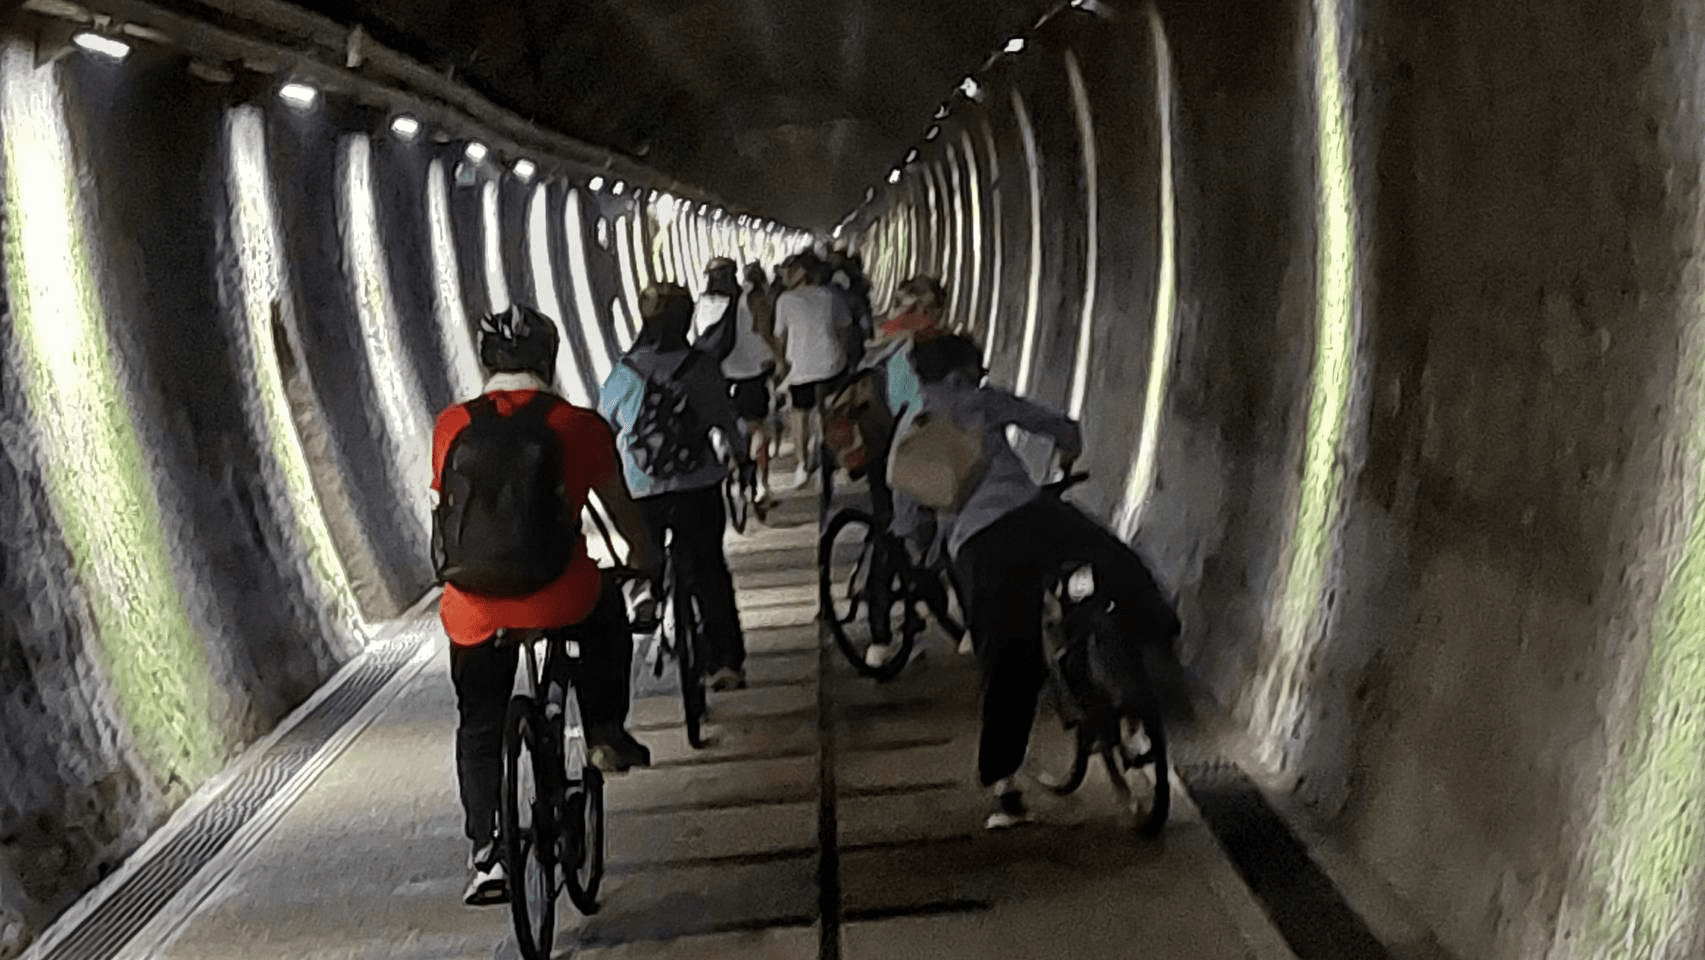 隧道內投射燈照射牆面，彷彿在時光隧道中騎車。張欽攝影